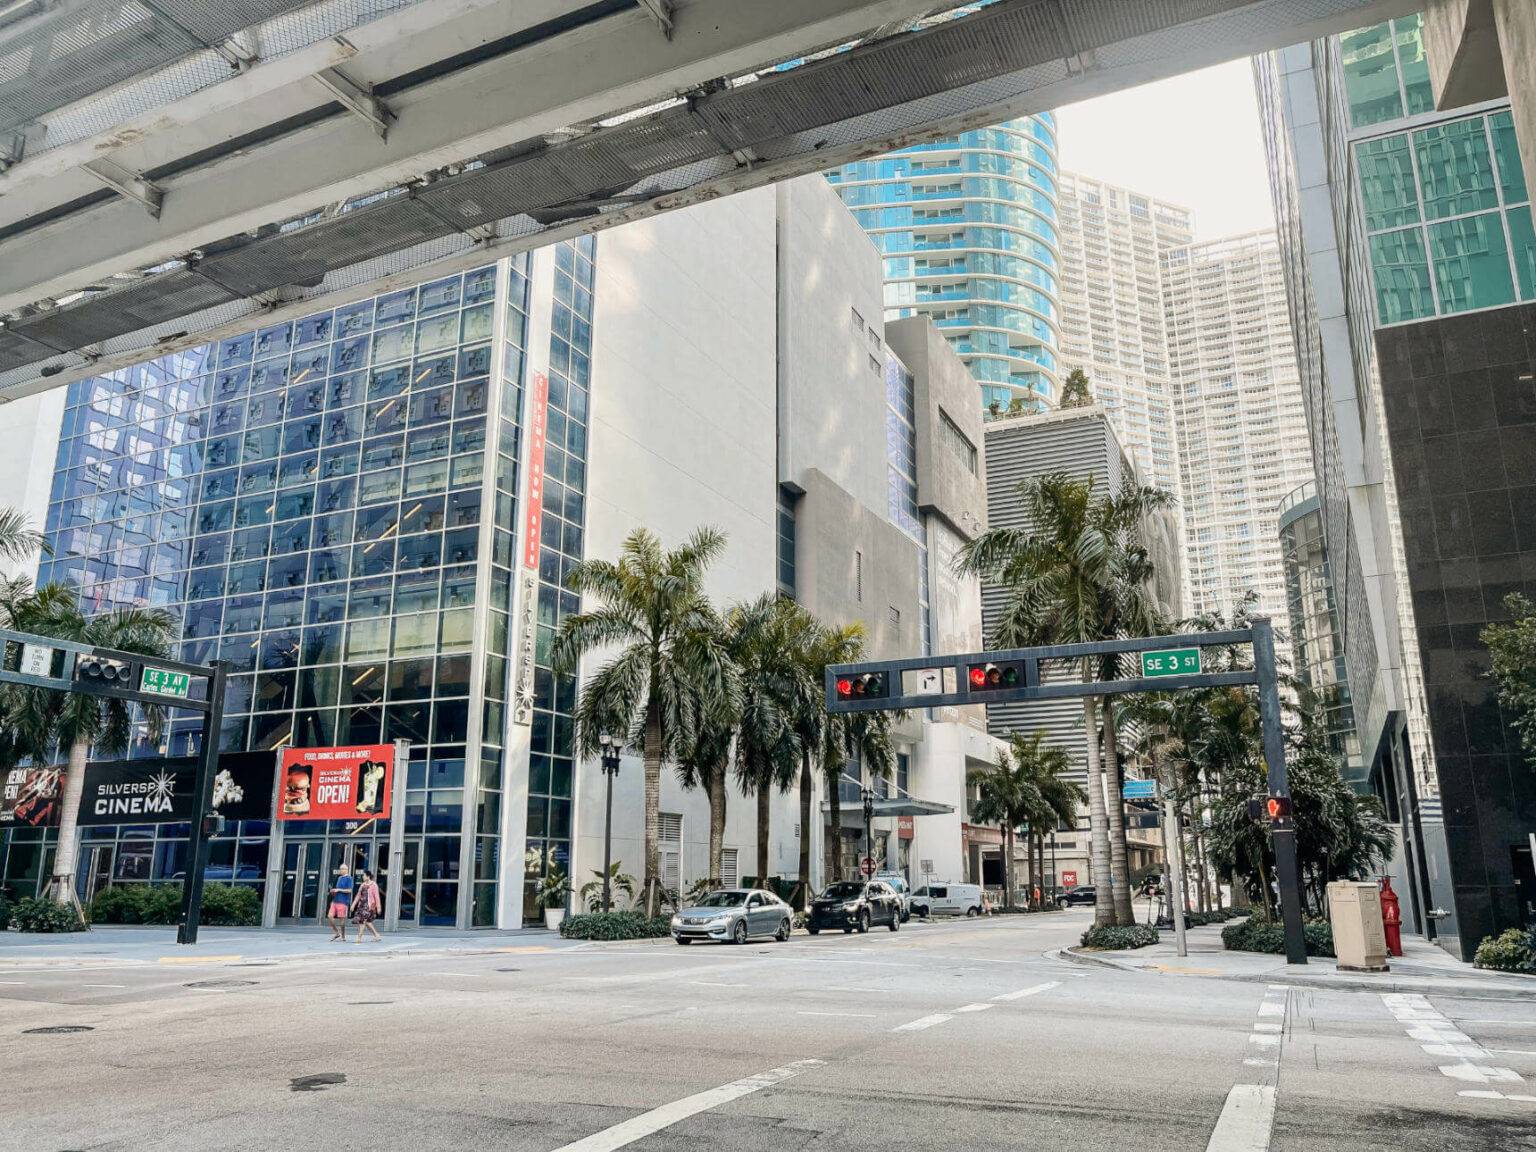 Glänzende Wolkenkratzer prägen das Stadtbild in Downtown Miami.